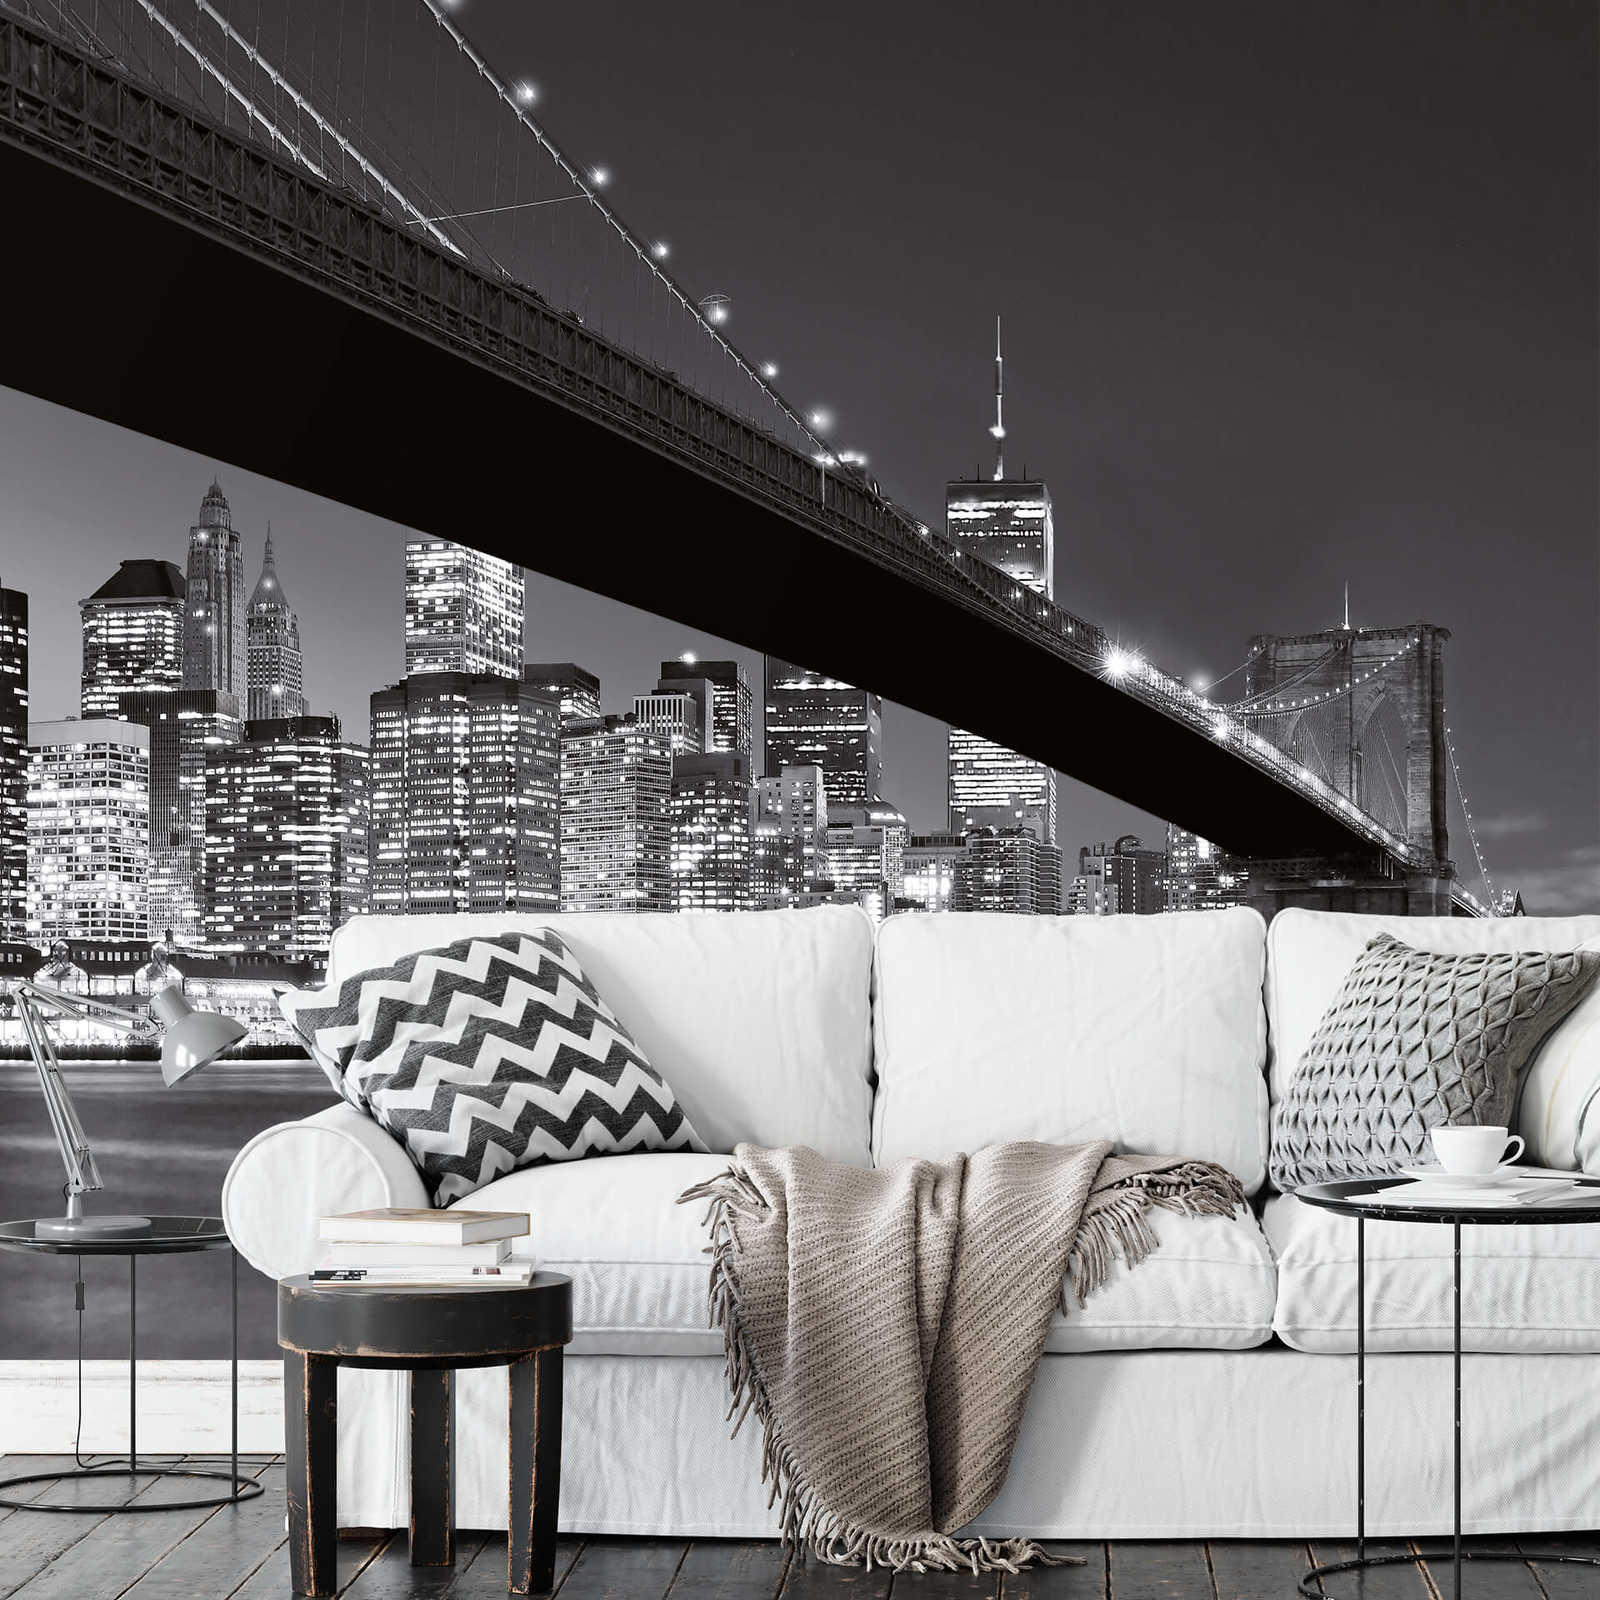             Papel pintado Puente de Brooklyn de Nueva York en blanco y negro
        